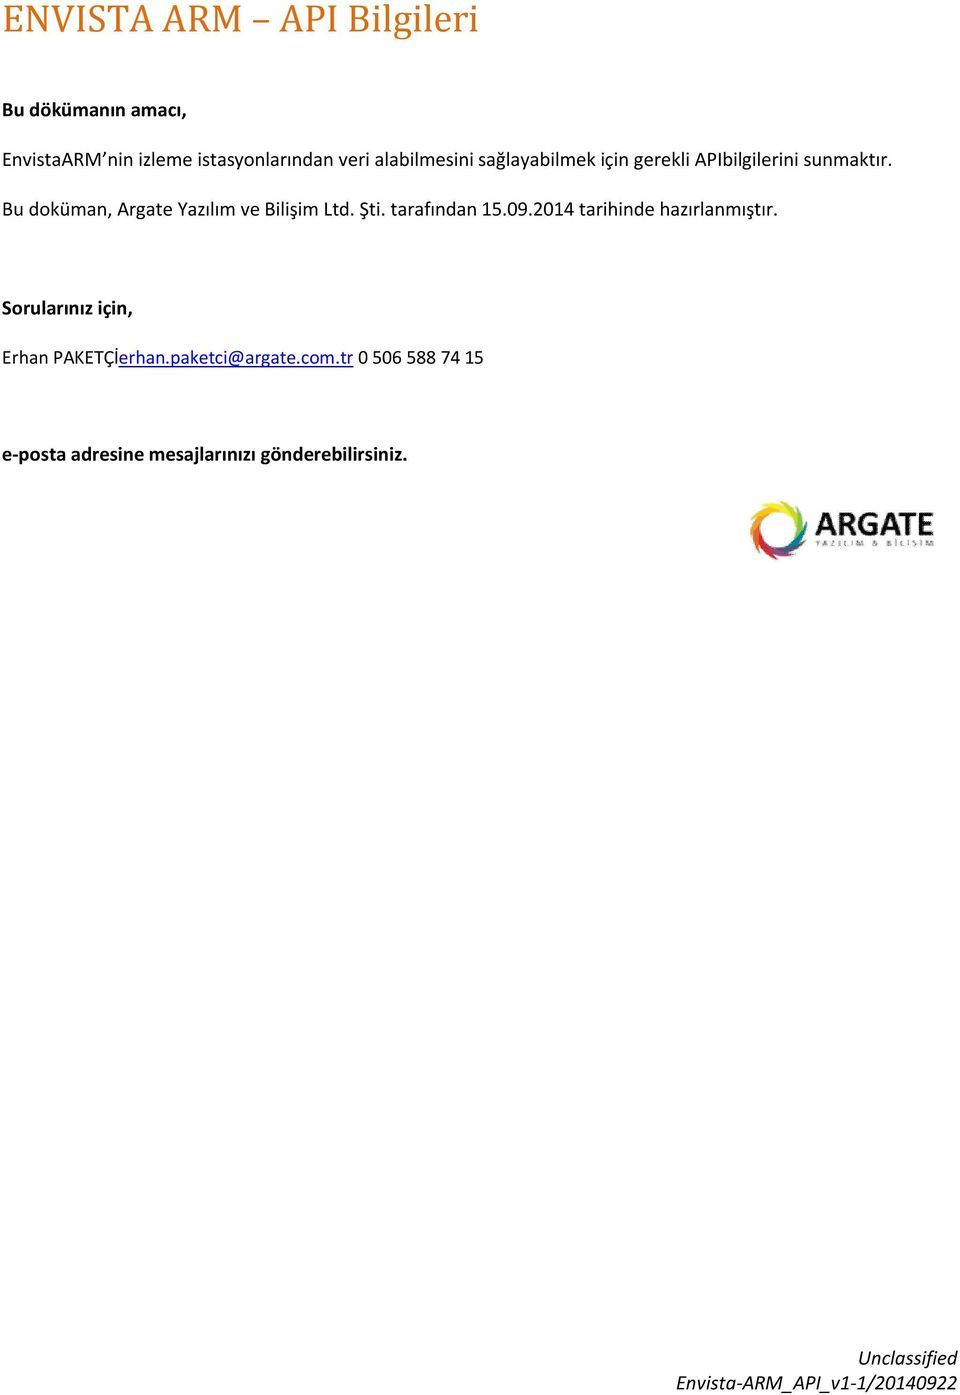 Bu dküman, Argate Yazılım ve Bilişim Ltd. Şti. tarafından 15.09.